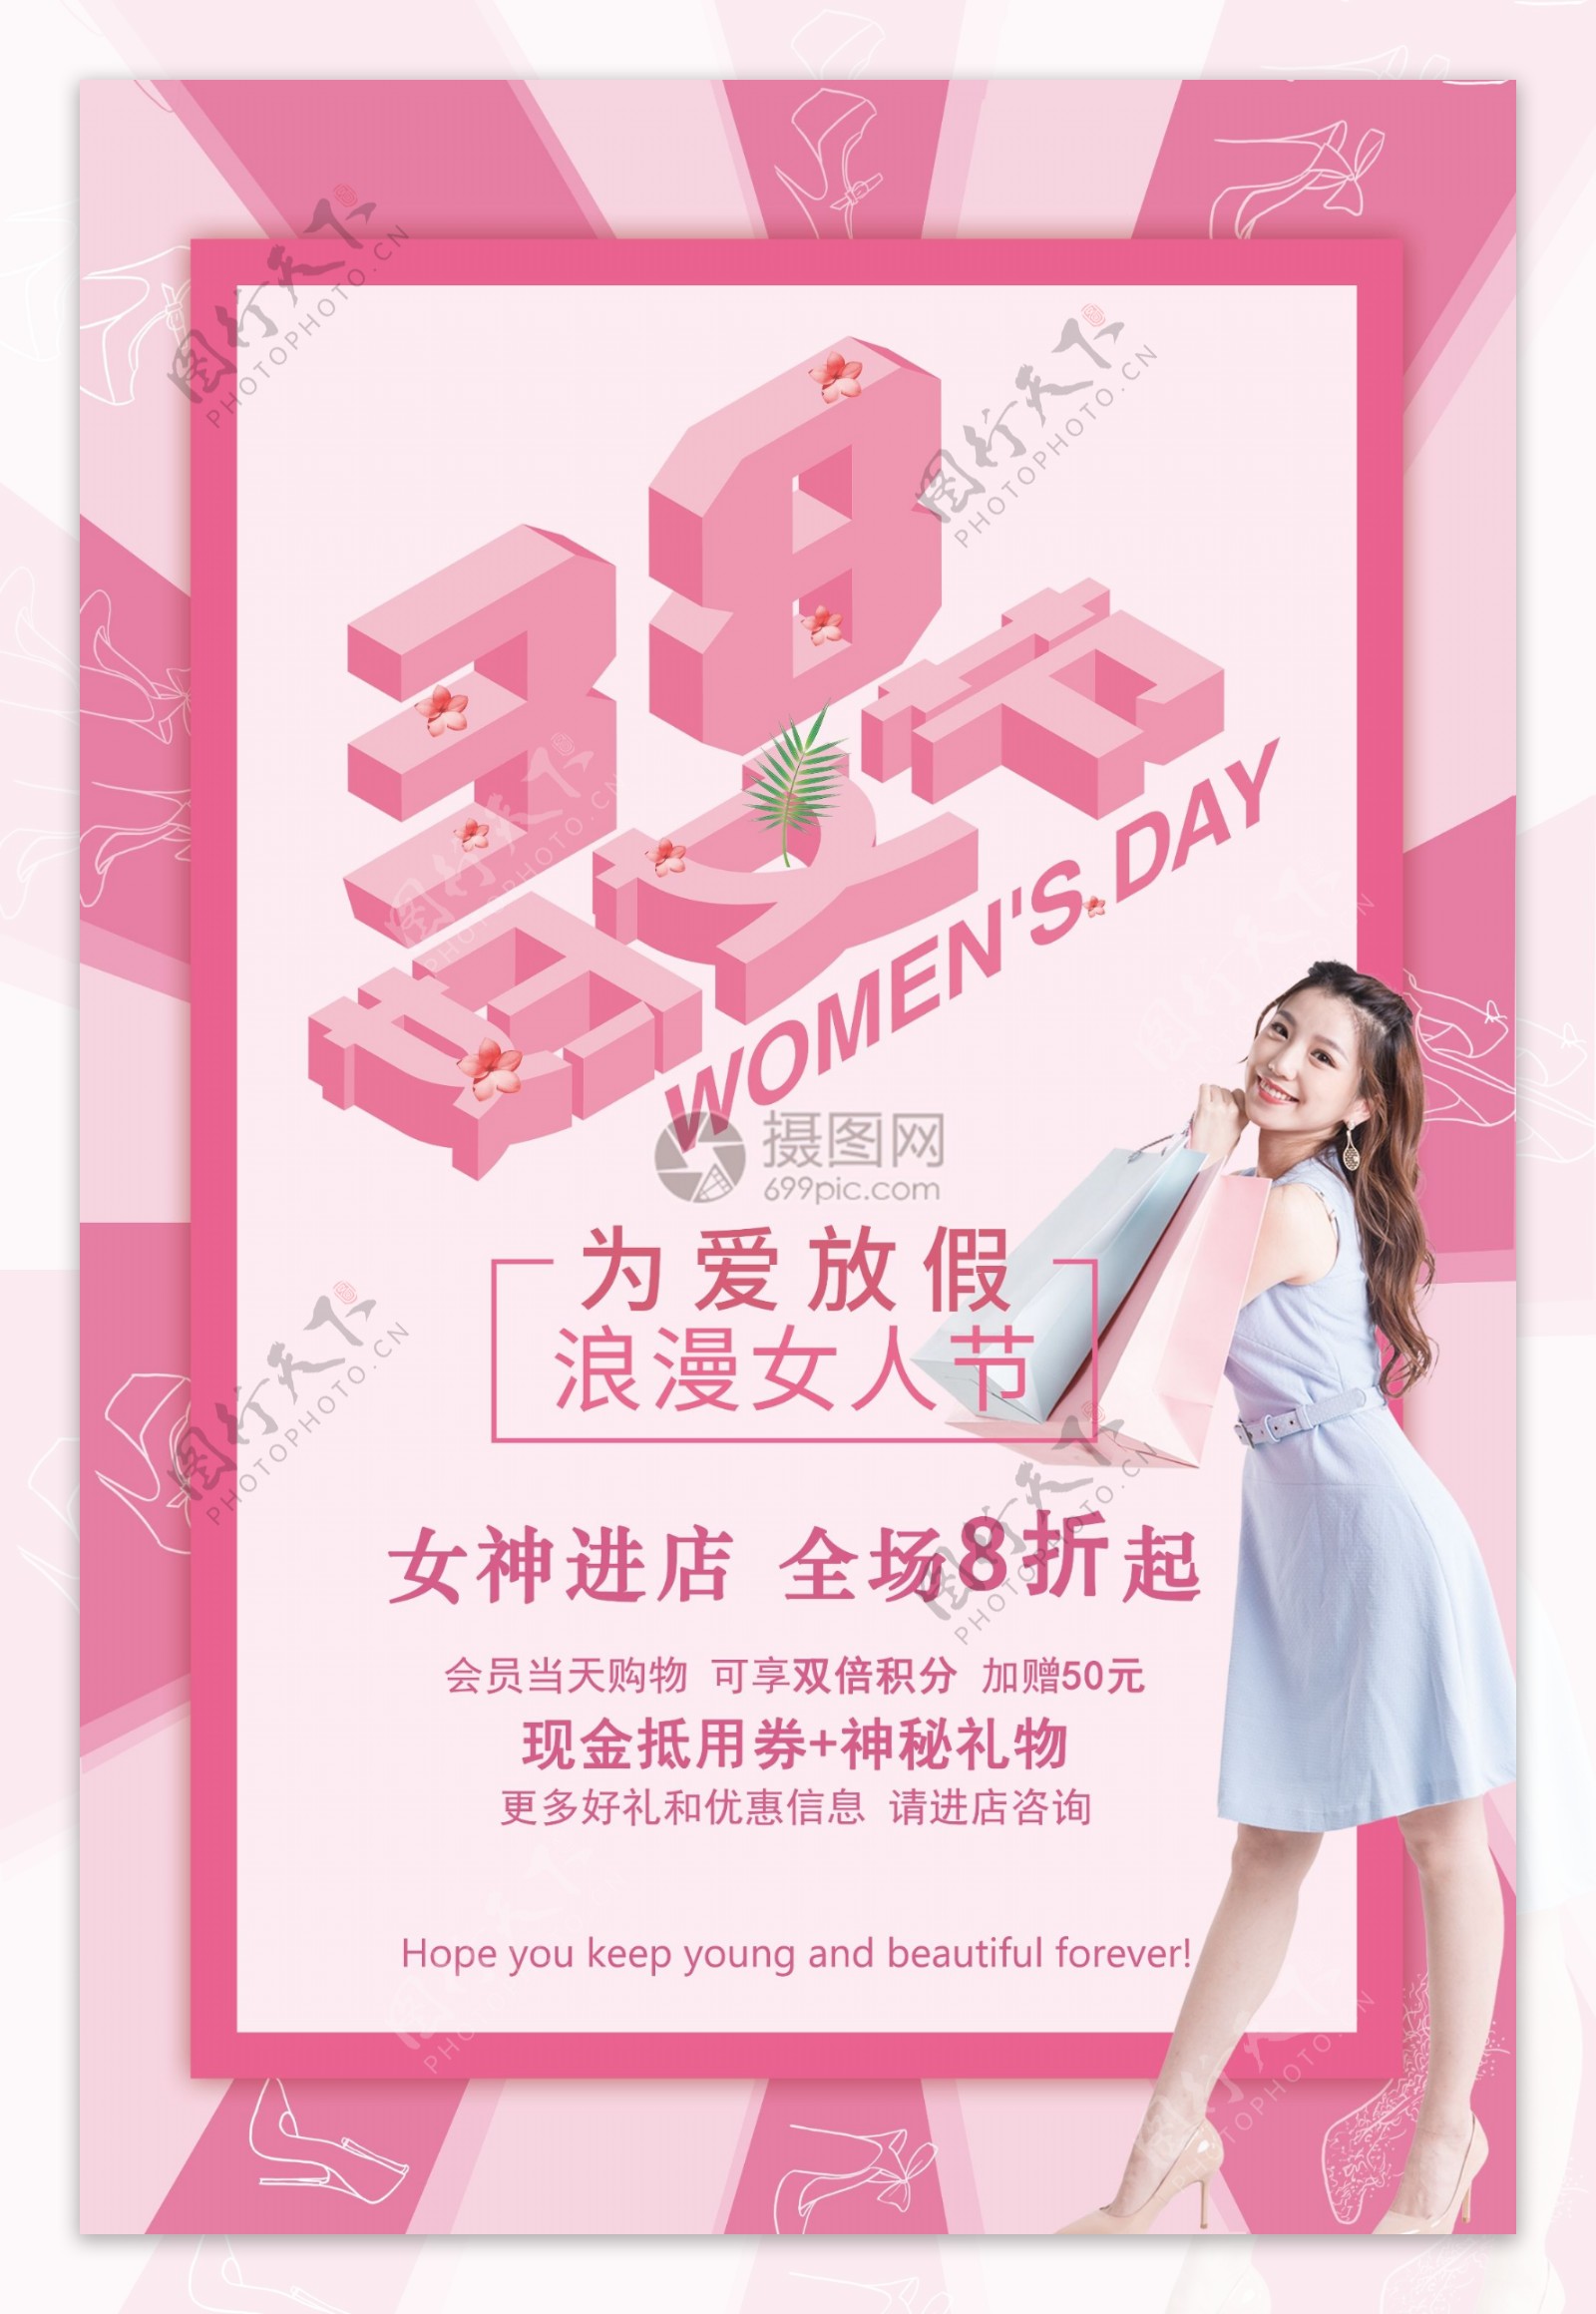 粉色简约3.8妇女节节日海报